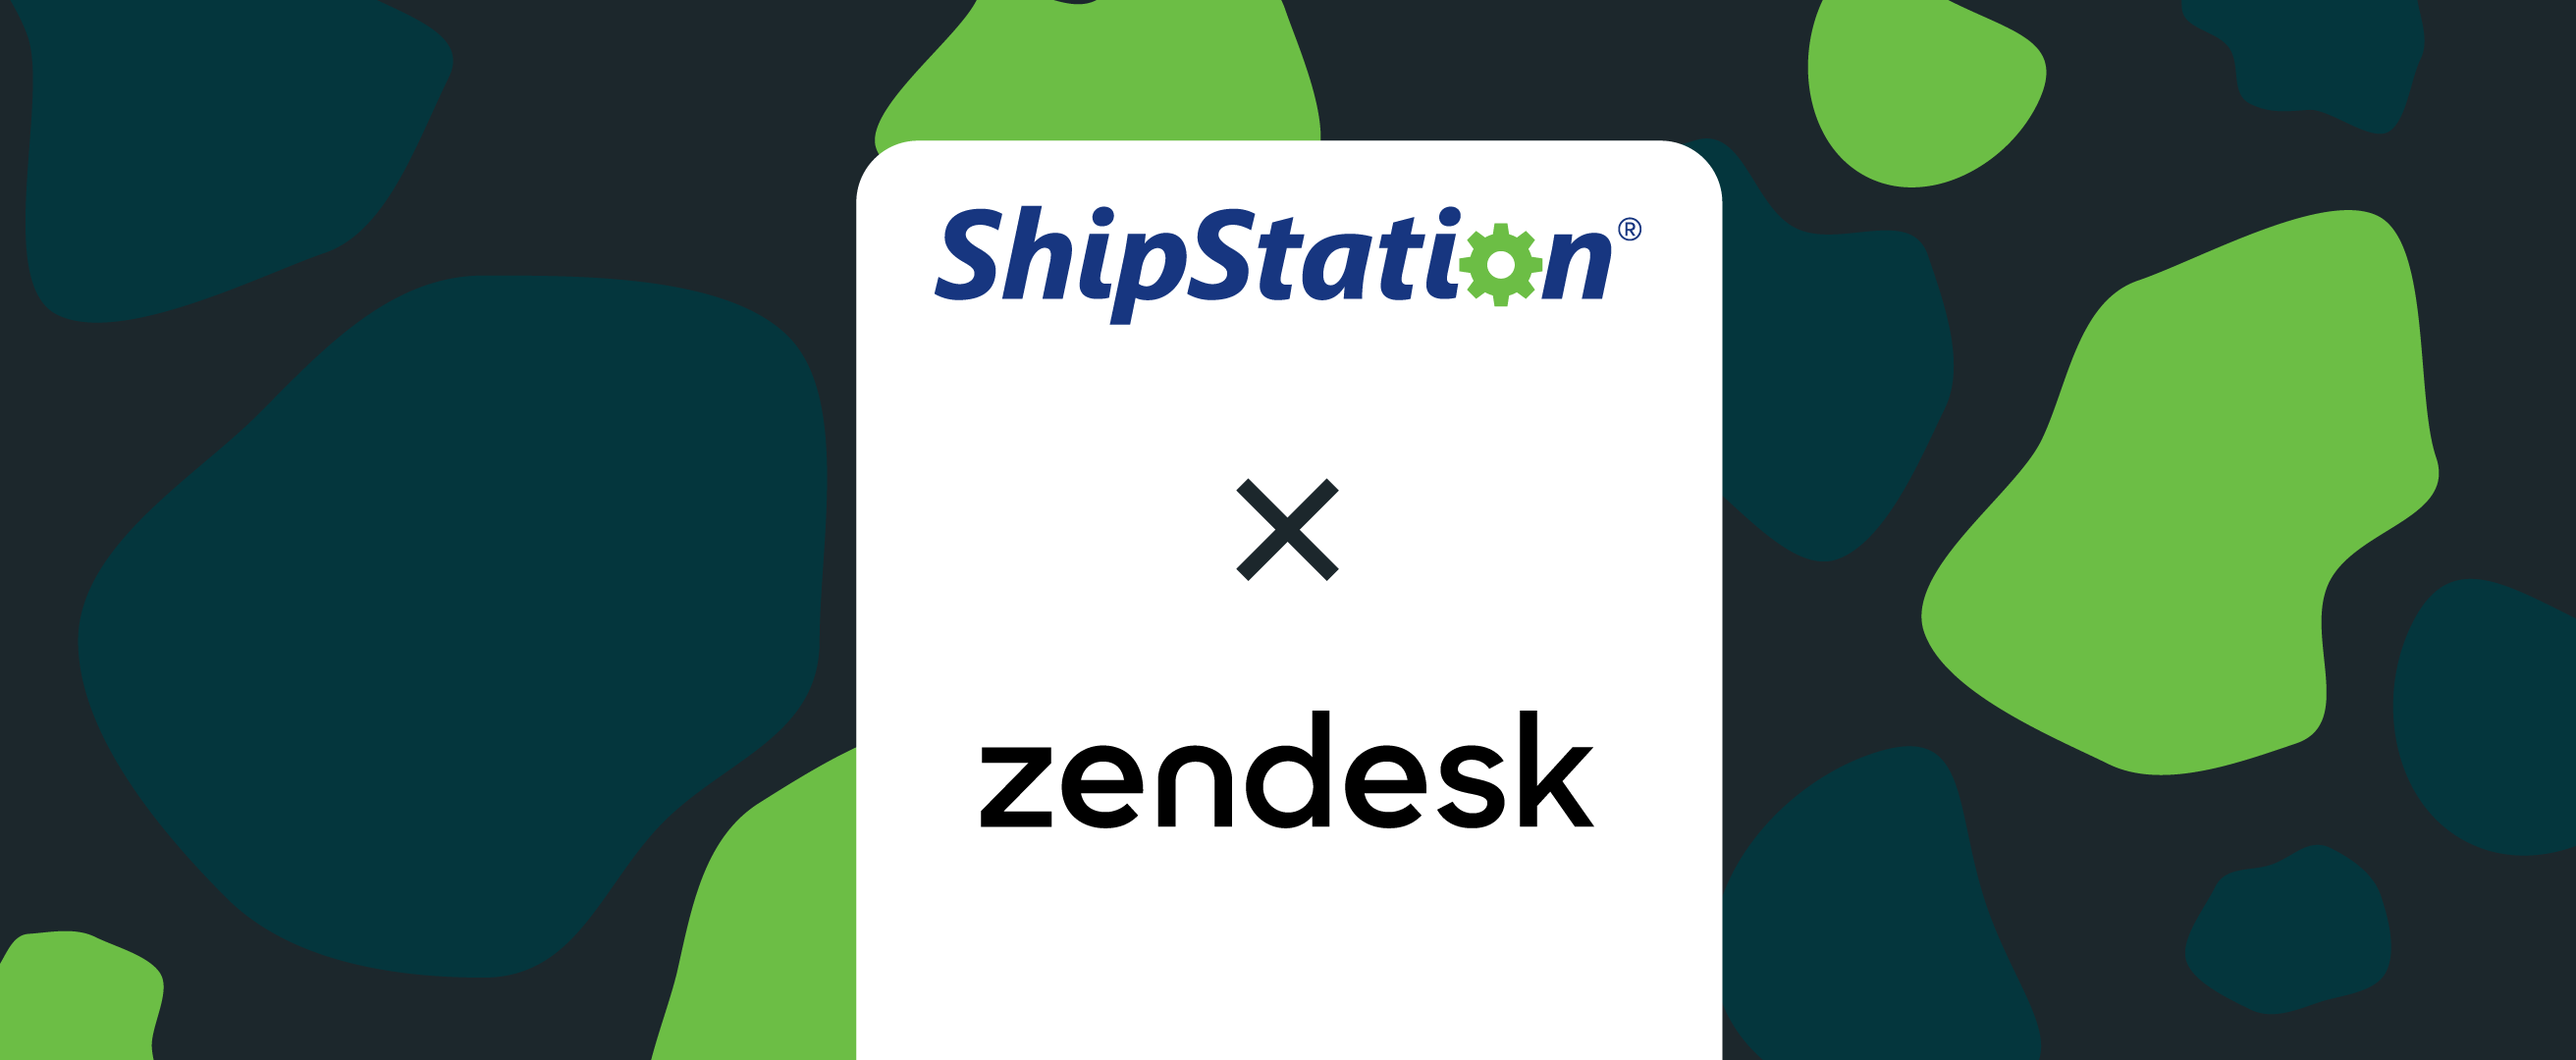 ShipStation x Zendesk